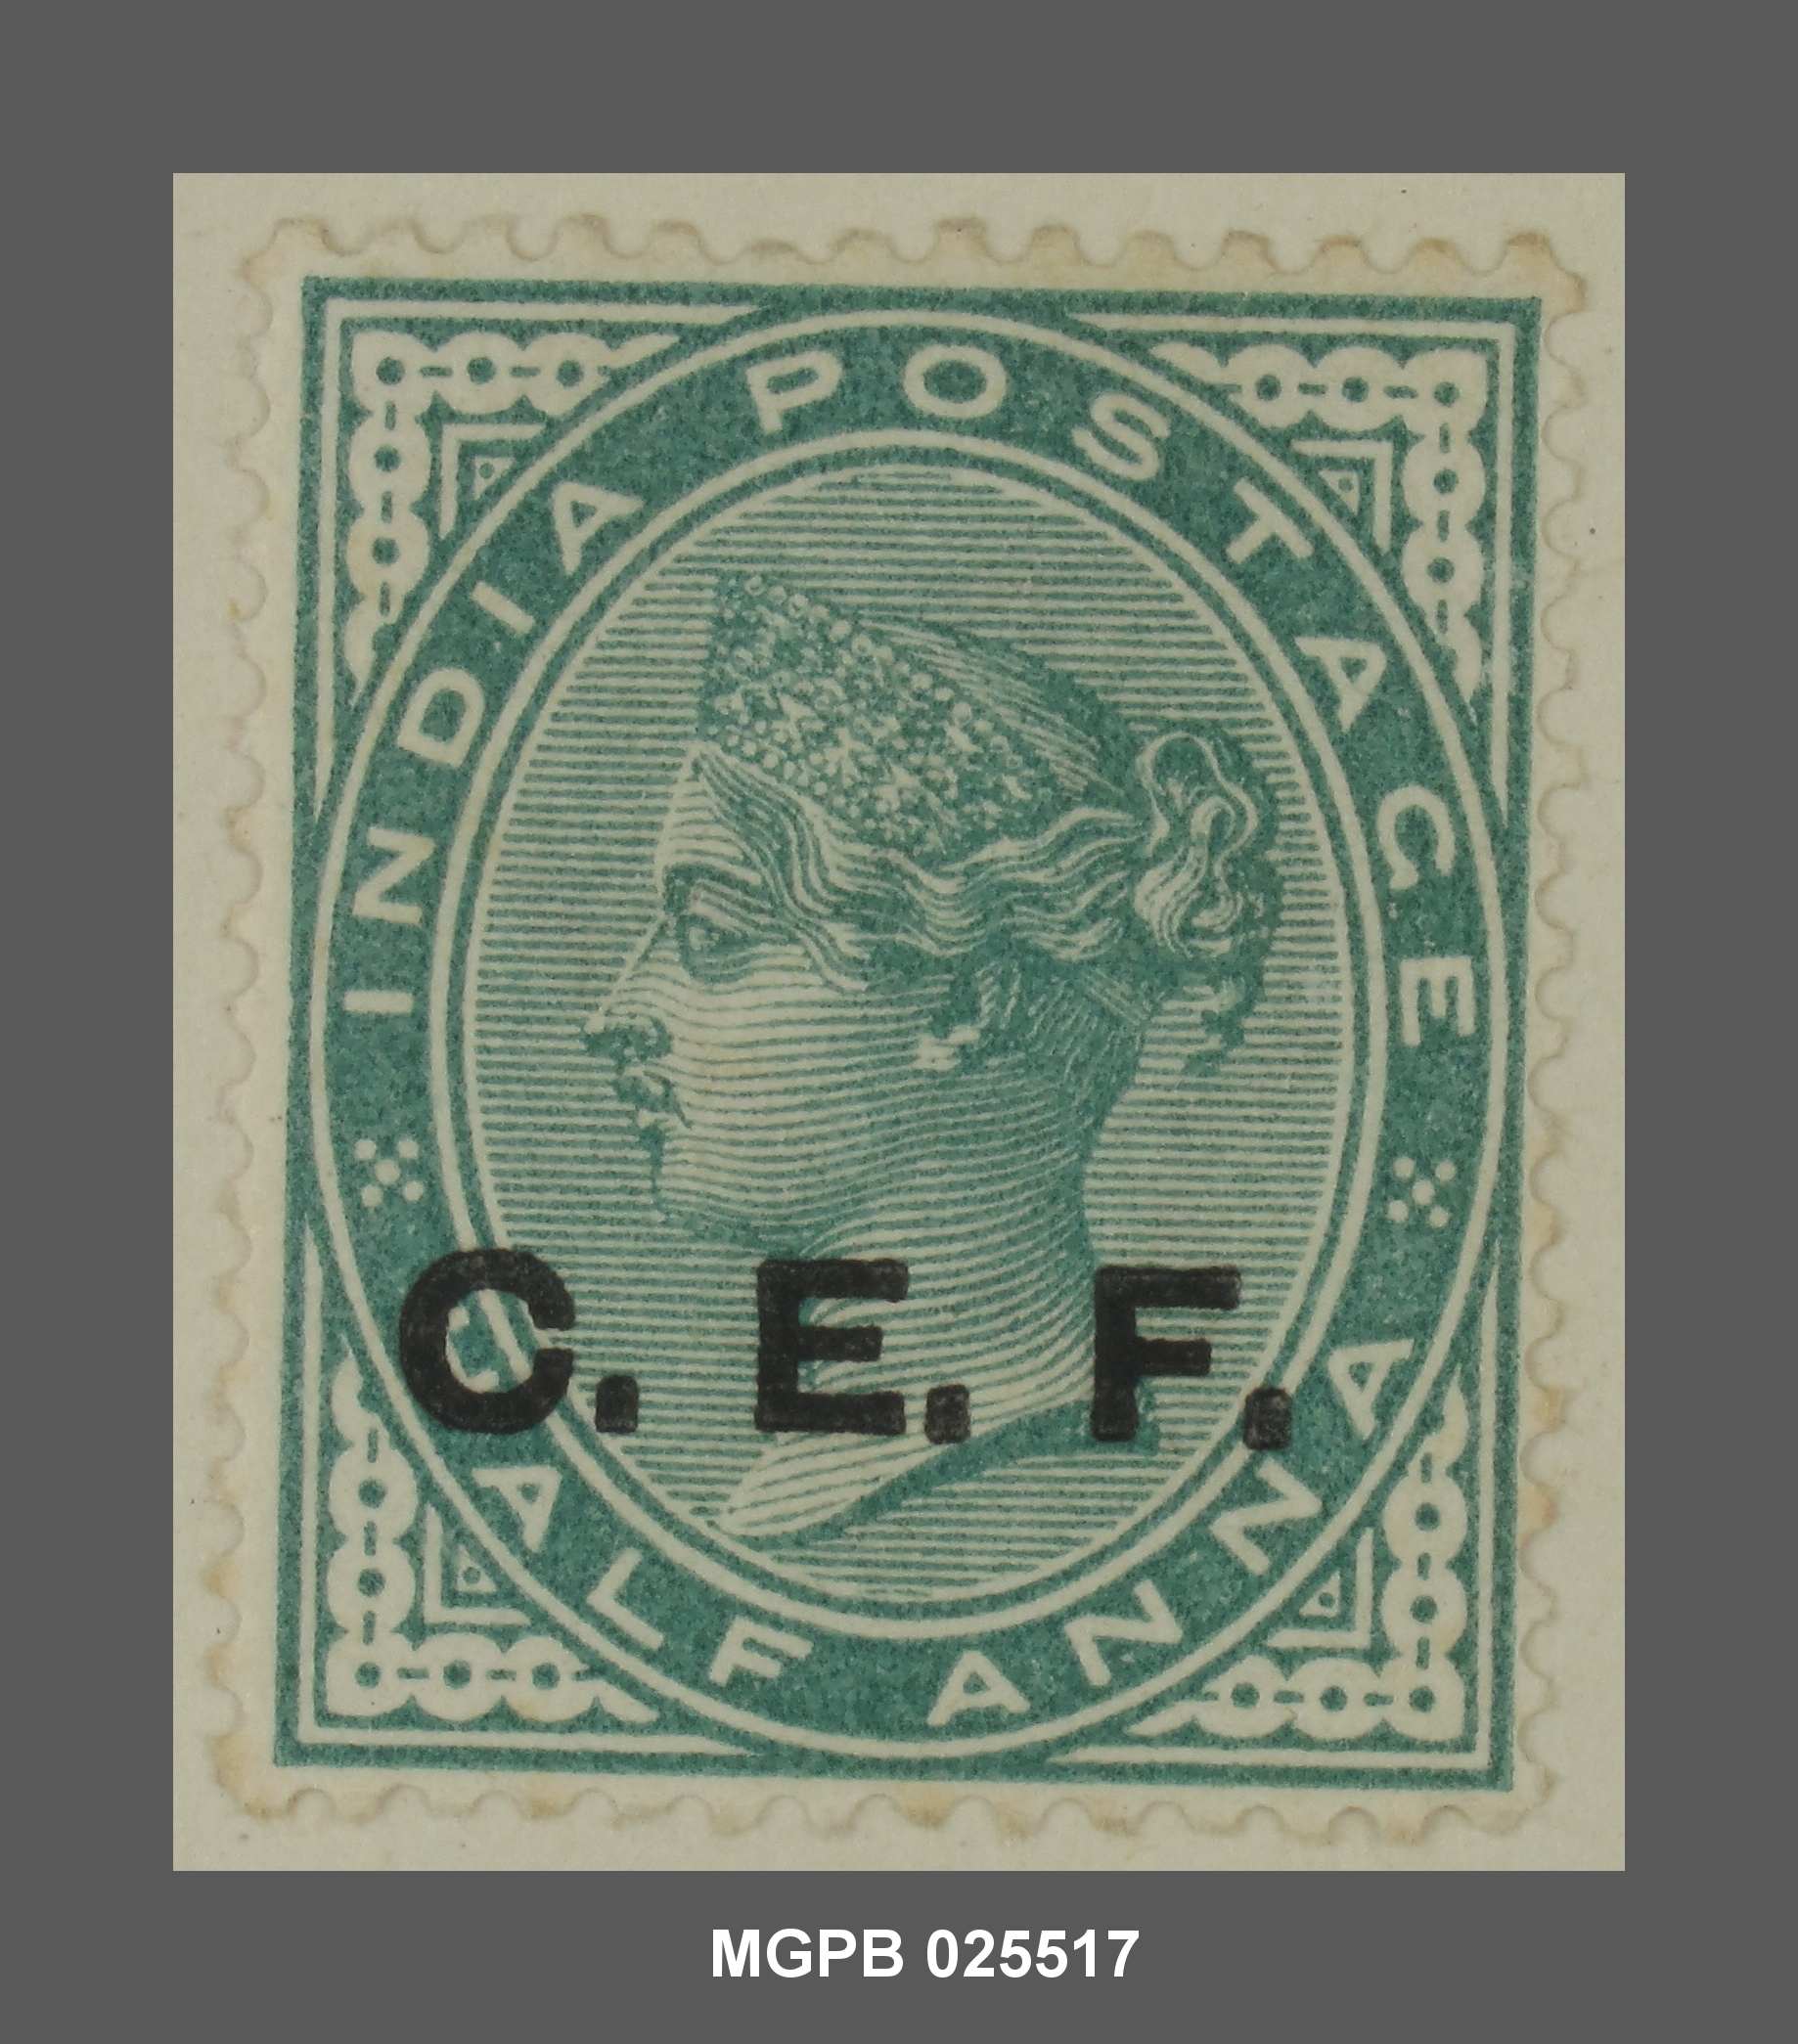 Los sellos coloniales de China (1862-1922) (II) - Col·leccio Marull